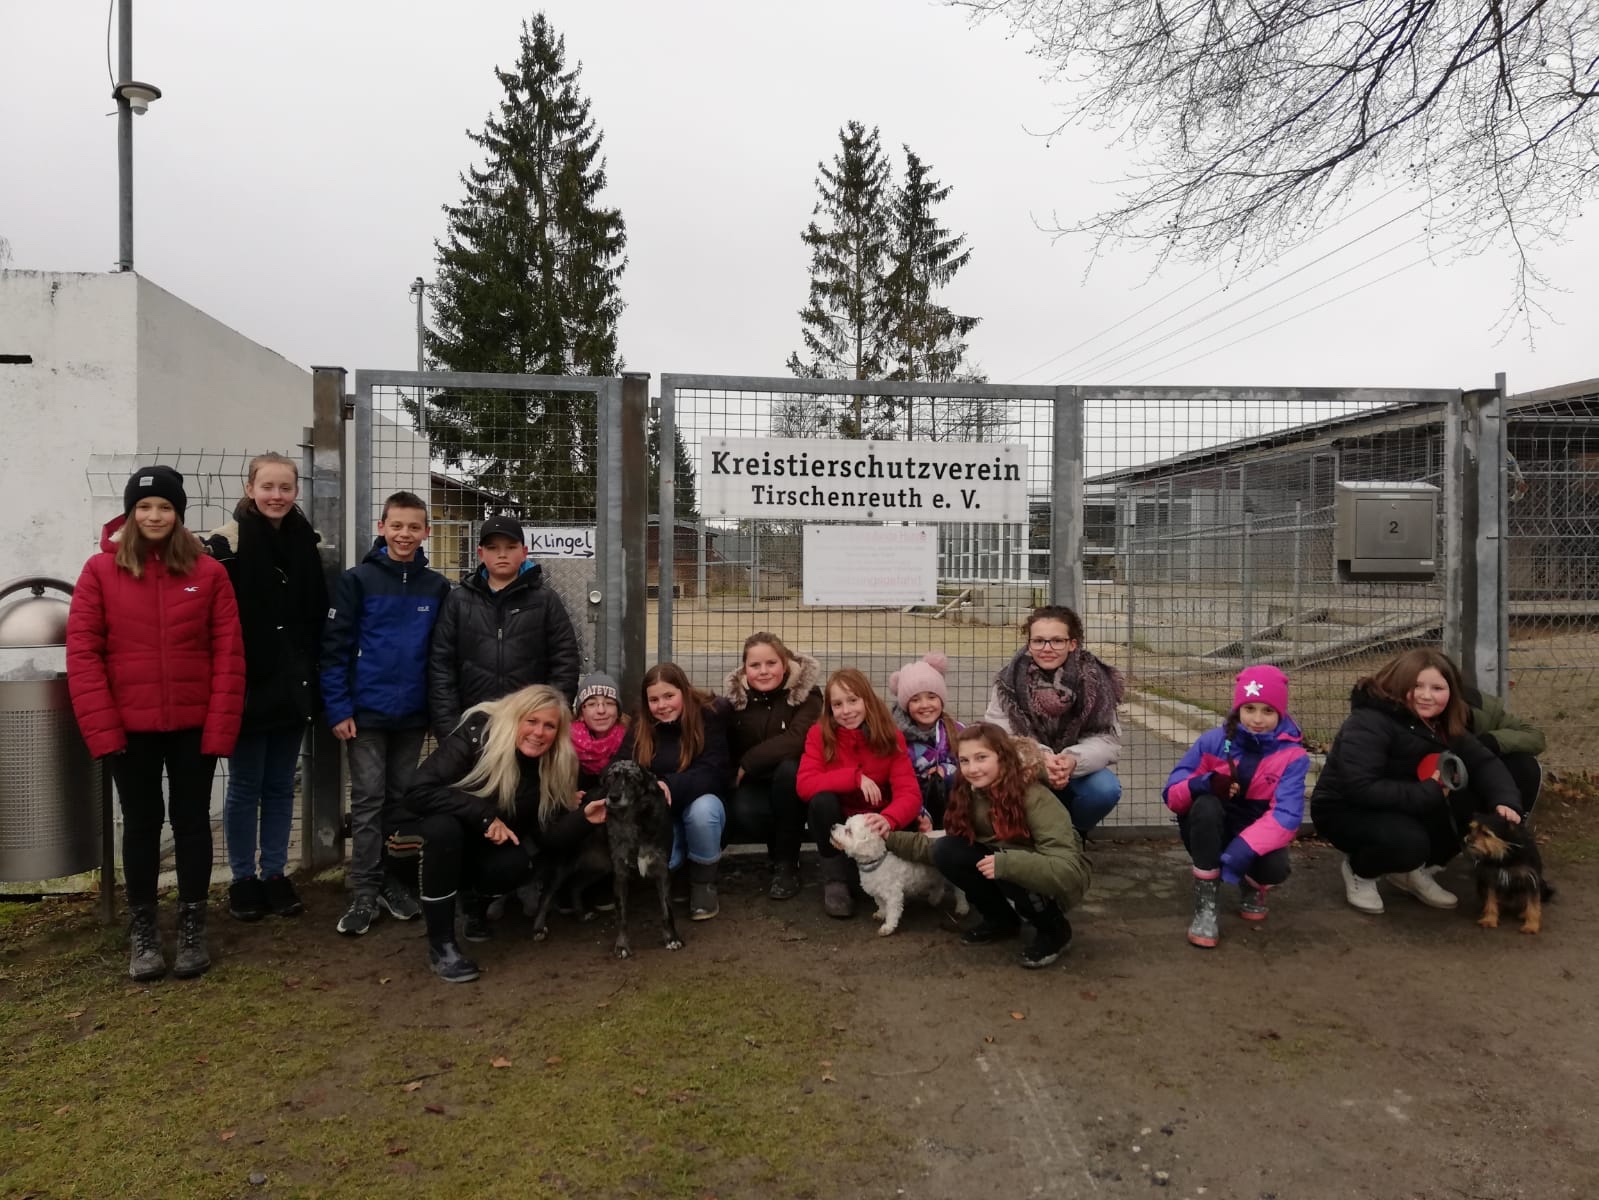 Weitere Schülergruppe startet zweite Exkursion ins Tierheim